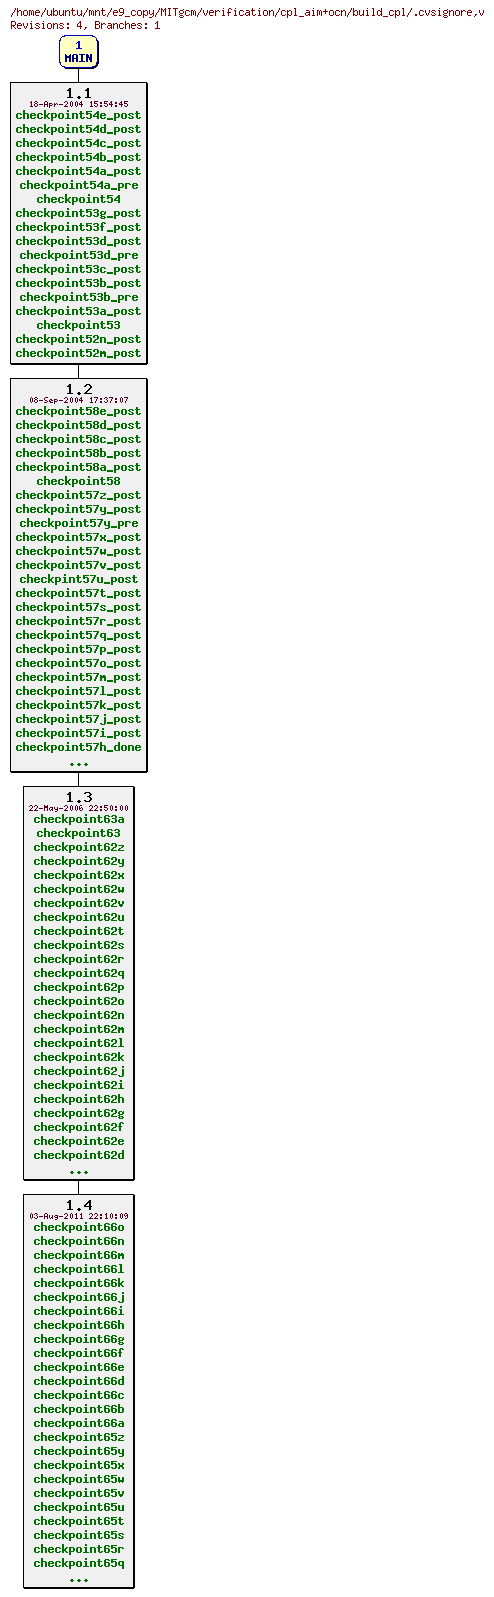 Revisions of MITgcm/verification/cpl_aim+ocn/build_cpl/.cvsignore